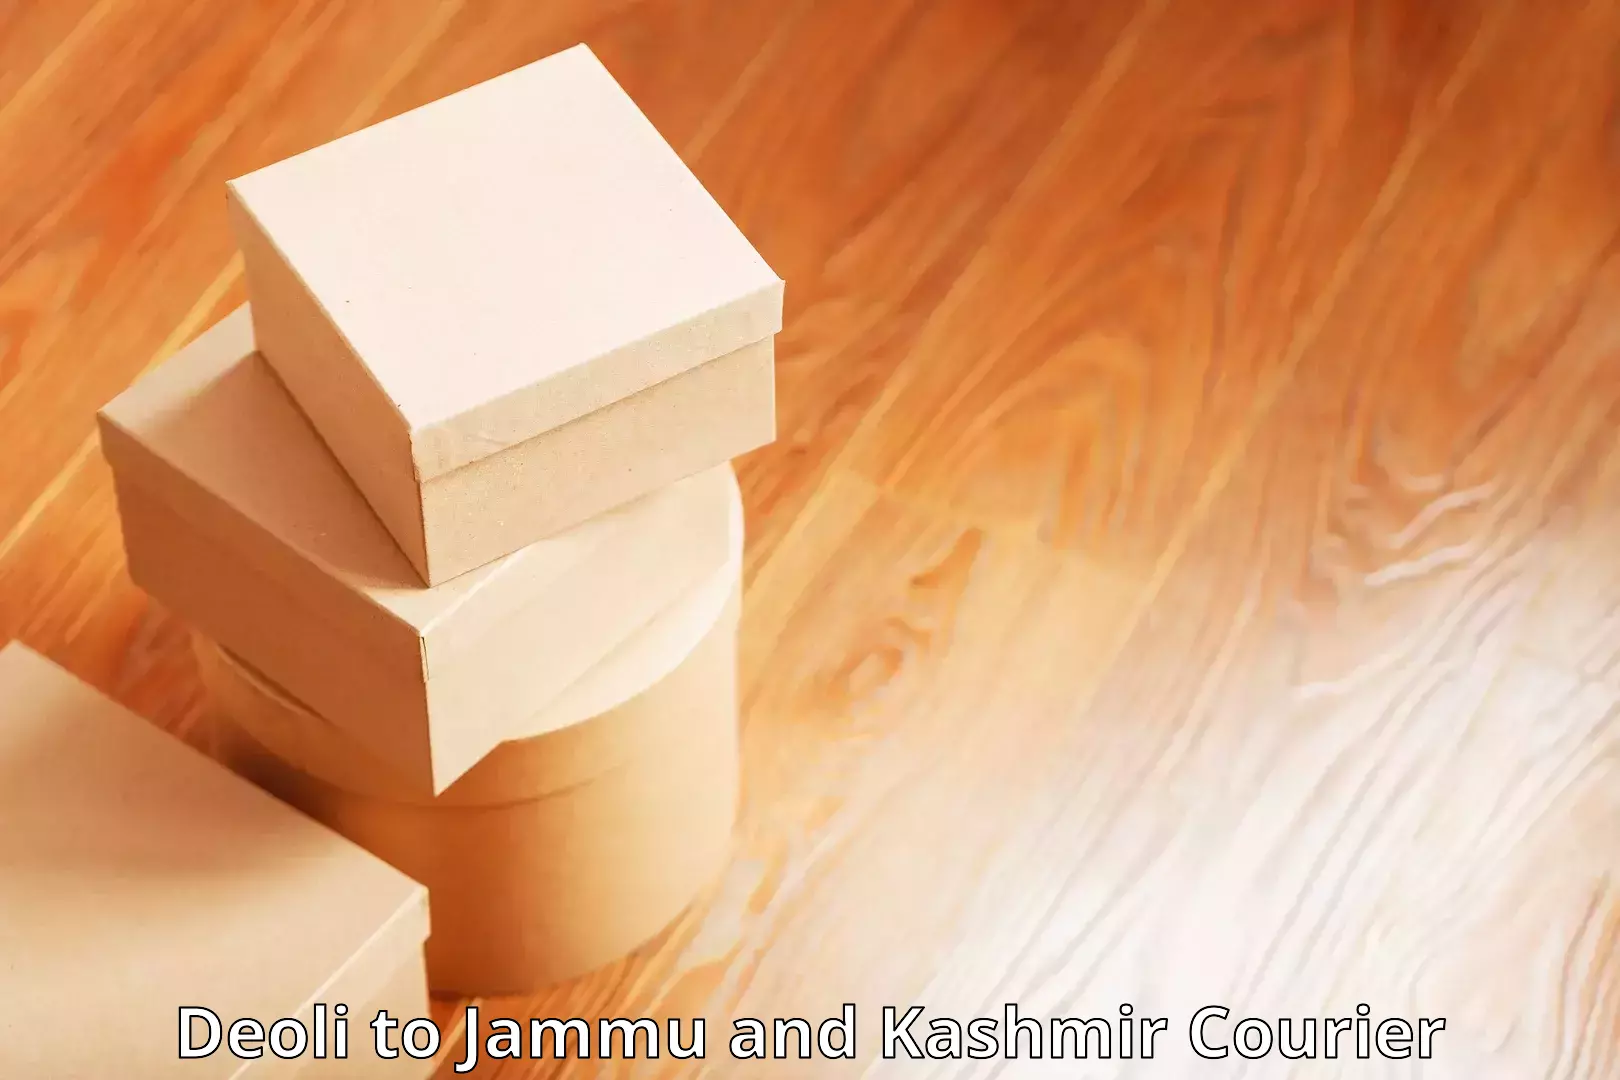 Delivery service partnership Deoli to University of Jammu